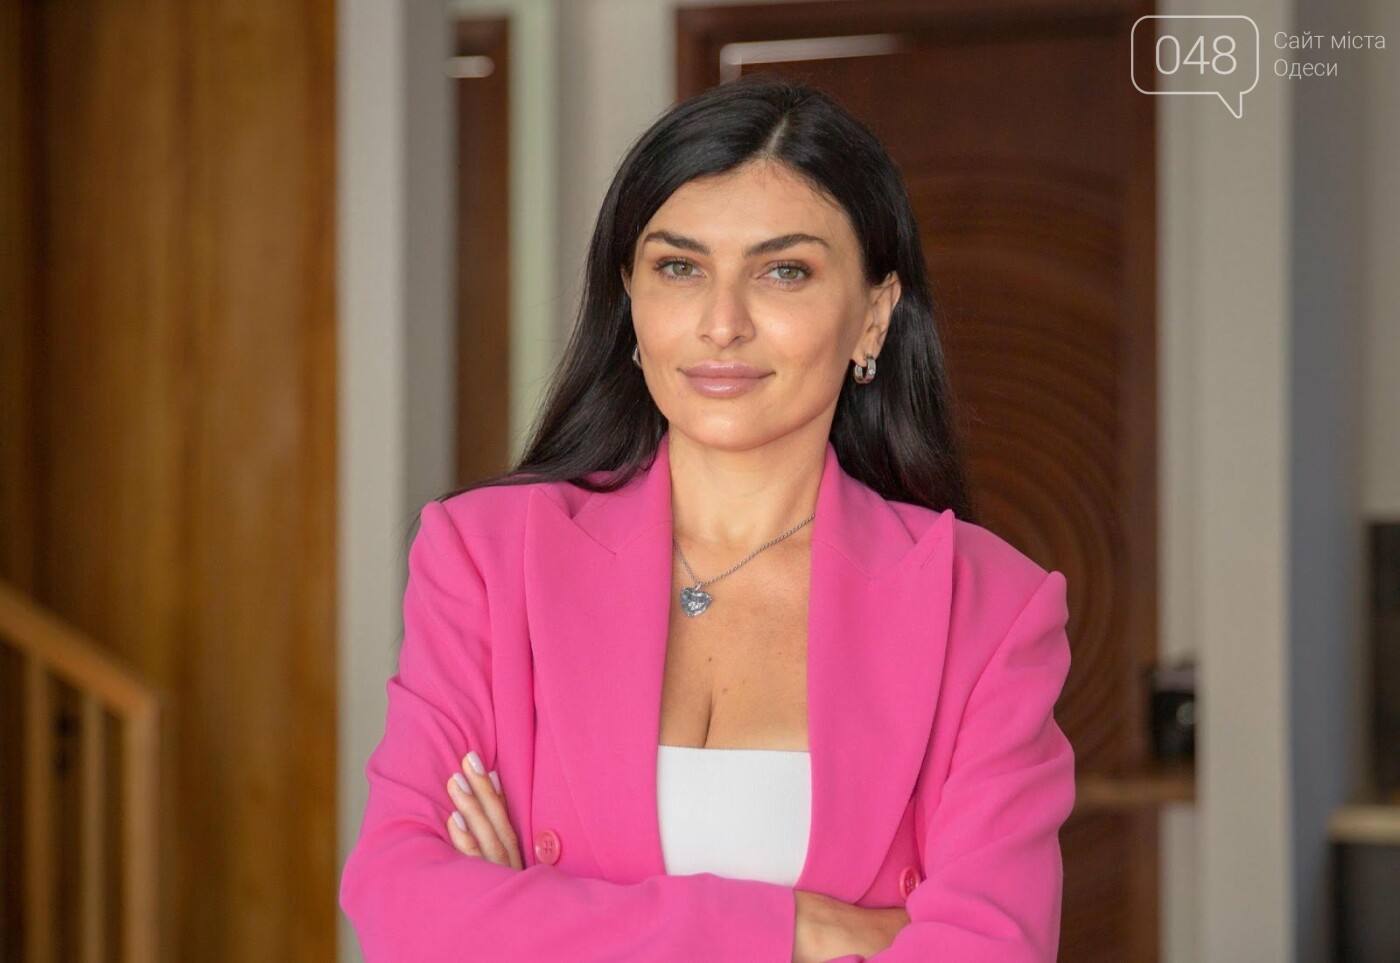 Виктория Галицкая: управляющий партнер SDG об инвестициях в доходную недвижимость Бали и Дубая, фото-1